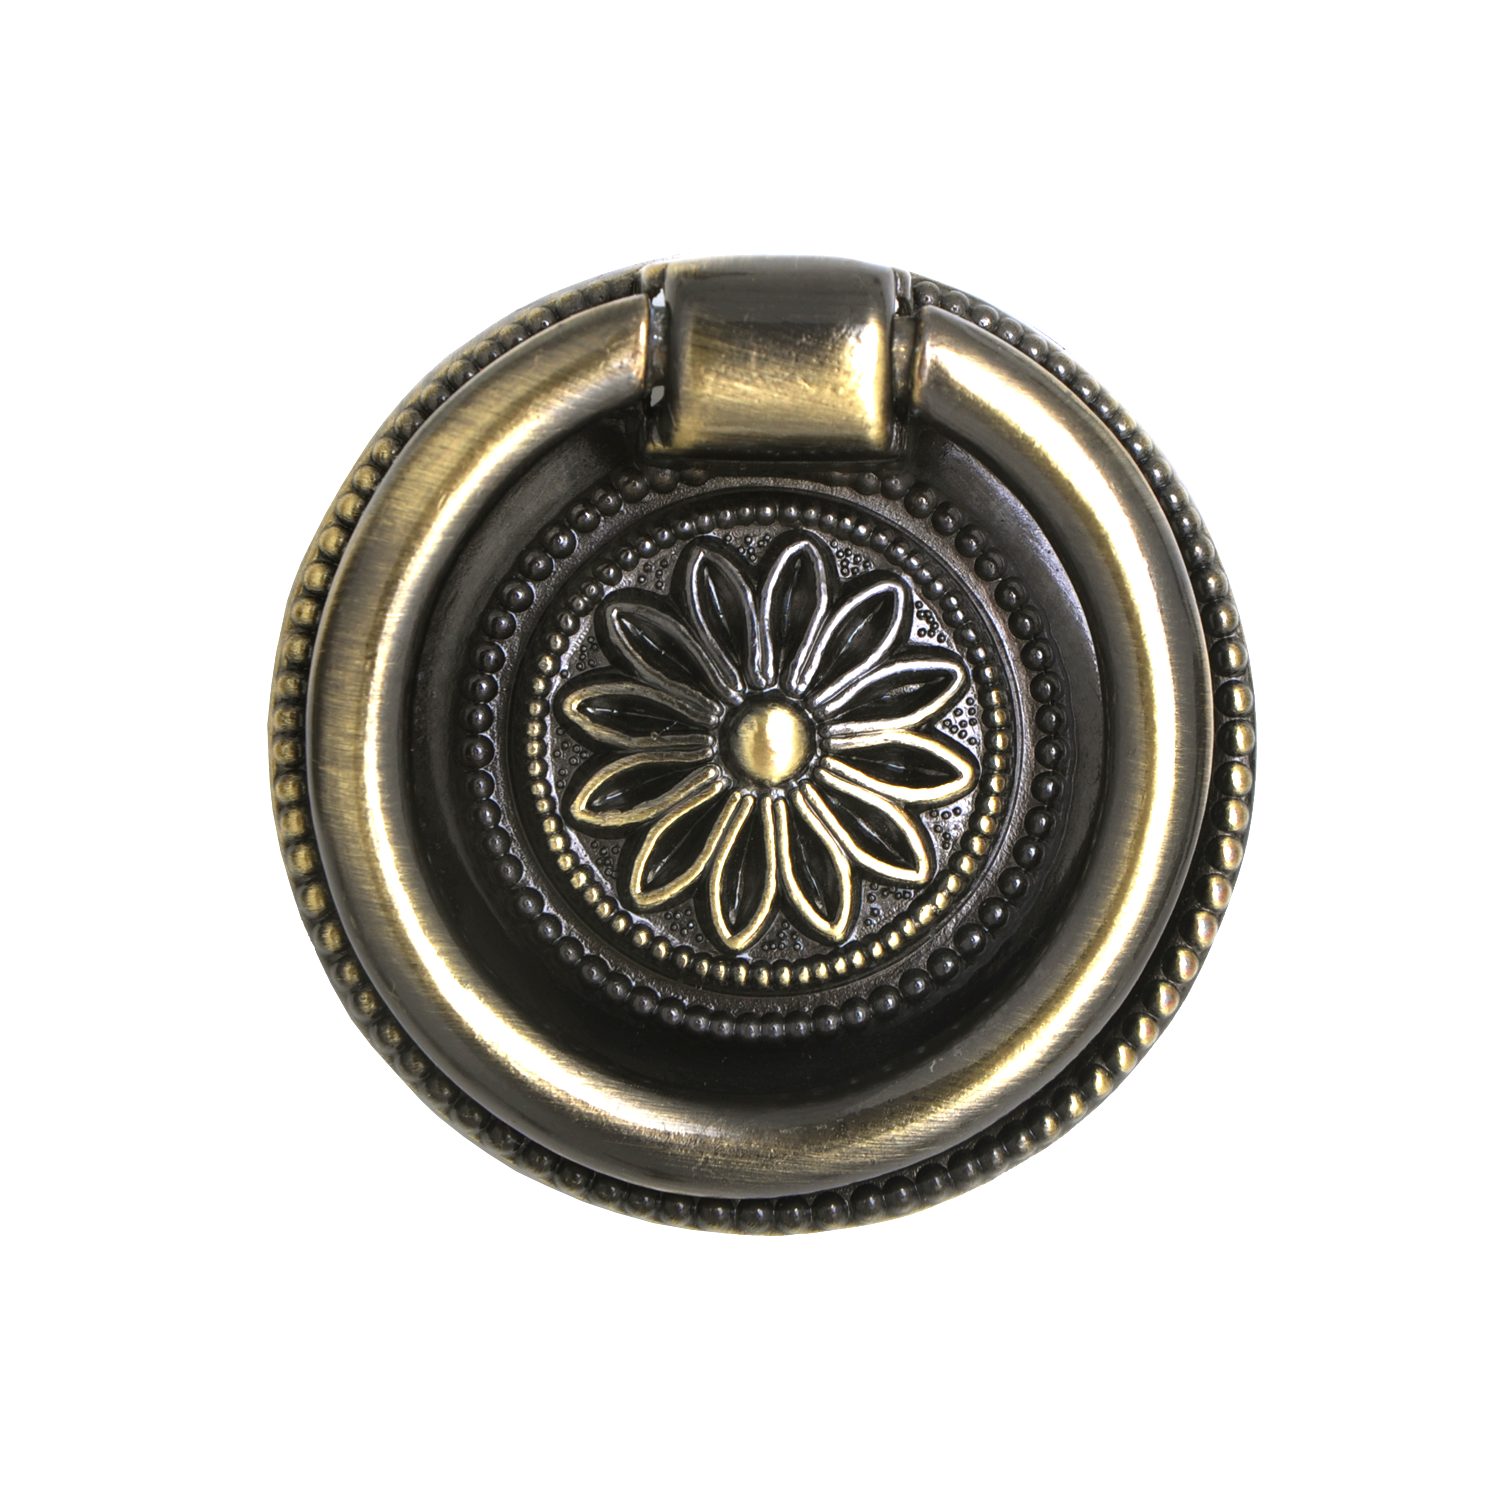 Medici Ring Pull, Antique Brass, 1 5/8" Diameter - Loft97 - 1